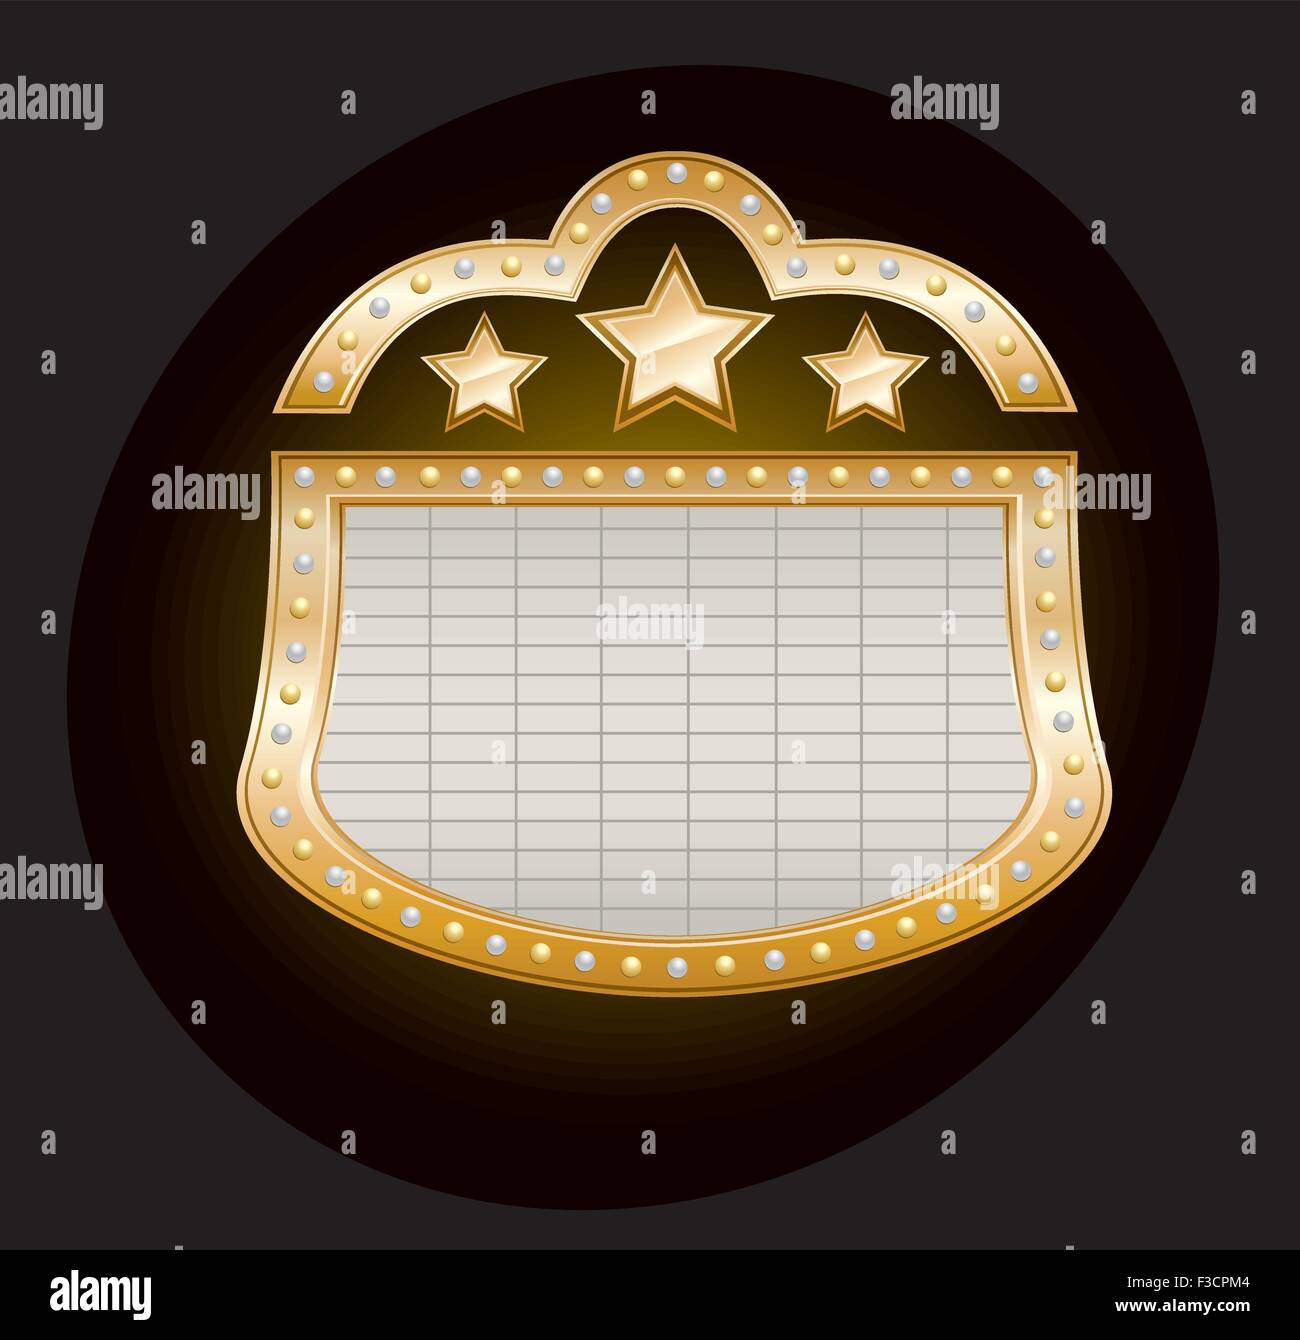 Golden Theater Festzelt mit Sternen und Lichter auf schwarz, Vektor-illustration Stock Vektor